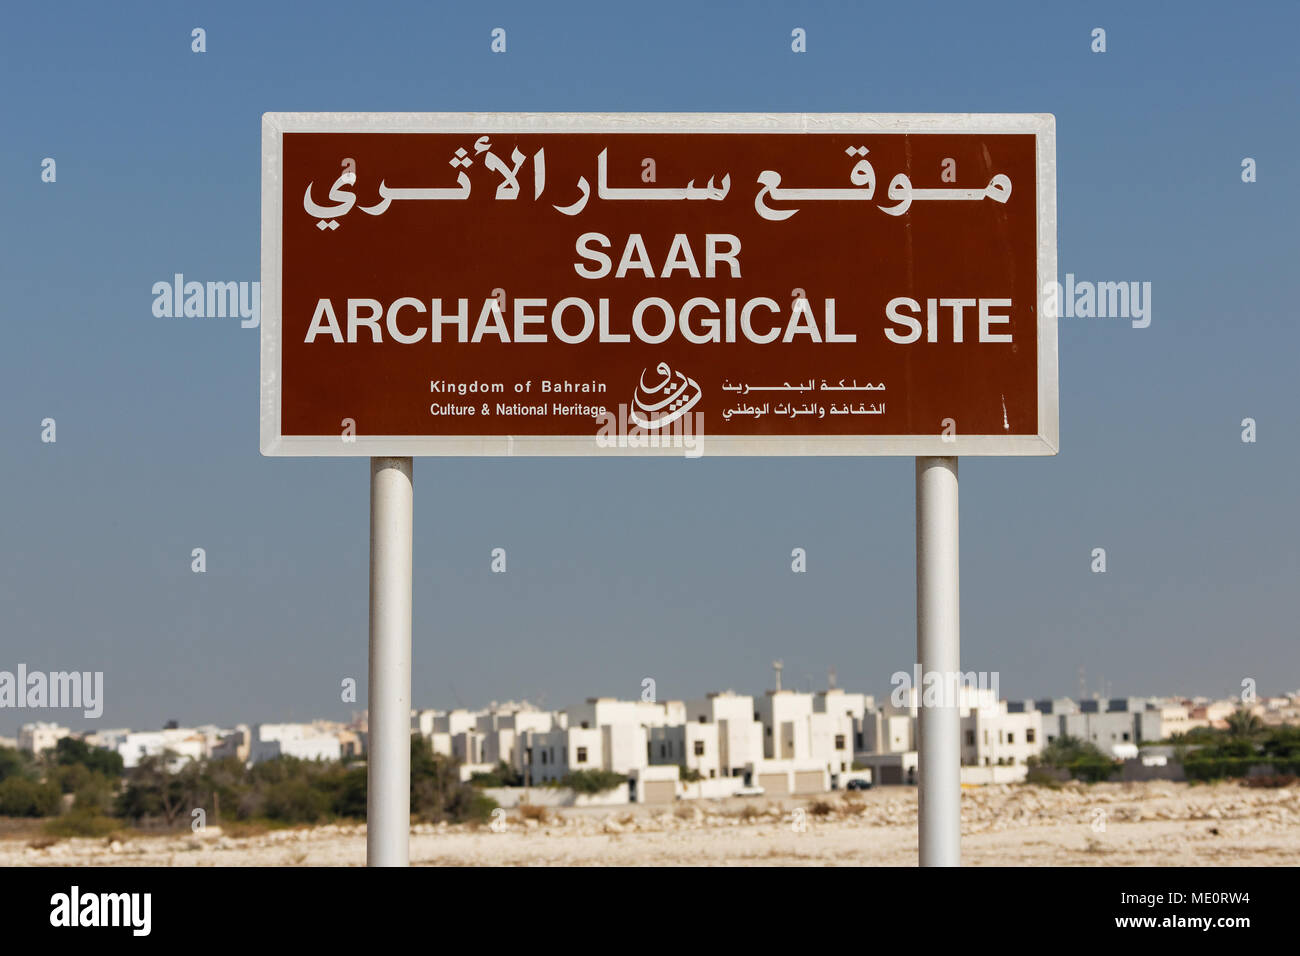 Kingdom of Bahrain. Königreich Bahrain. Saar archaeological site. Die Ruinen von Saar. Stock Photo